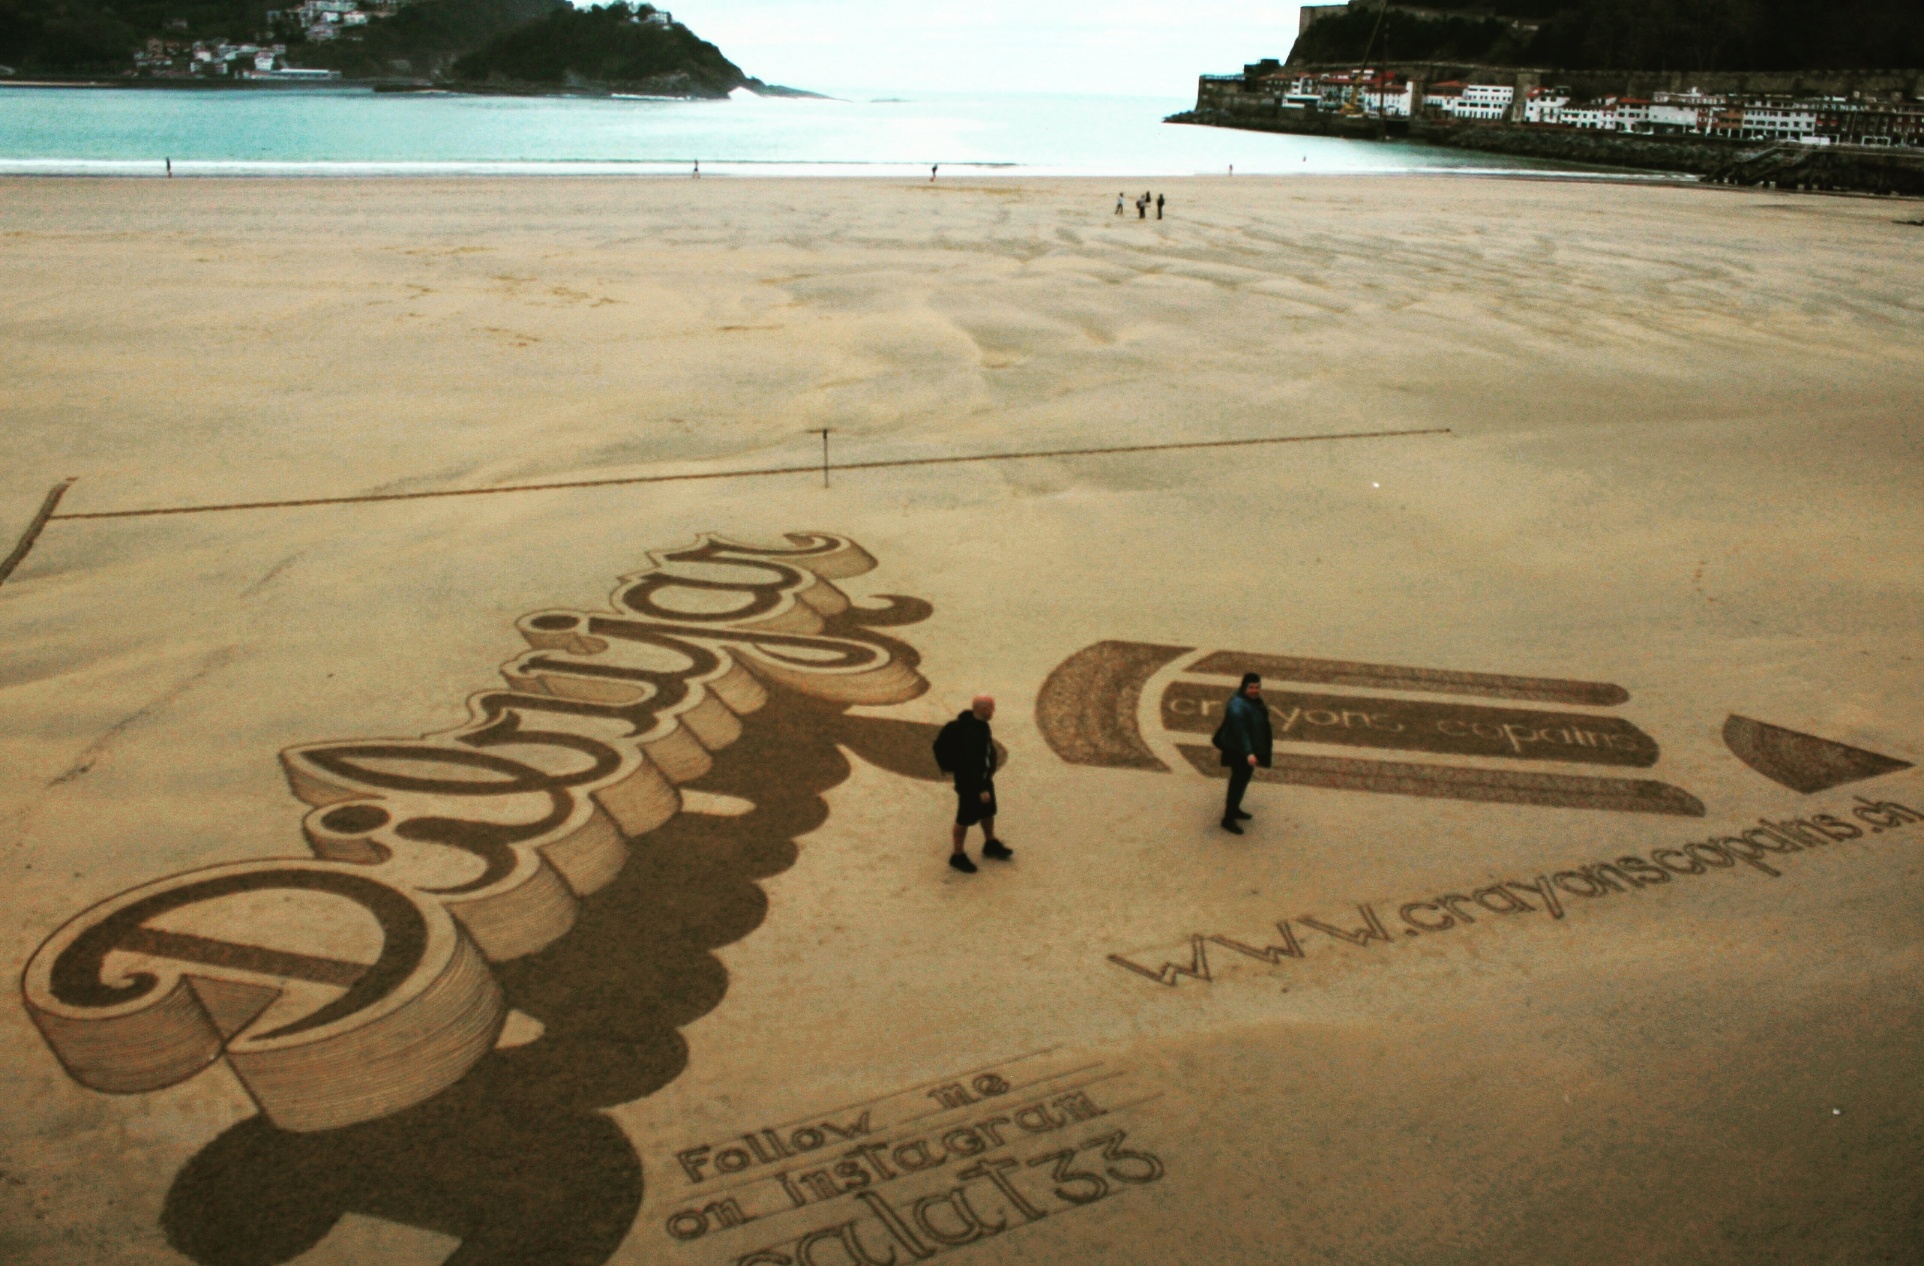 dibujo de Calat33 en la arena mostrando la palabra "dibujar" y un lápiz